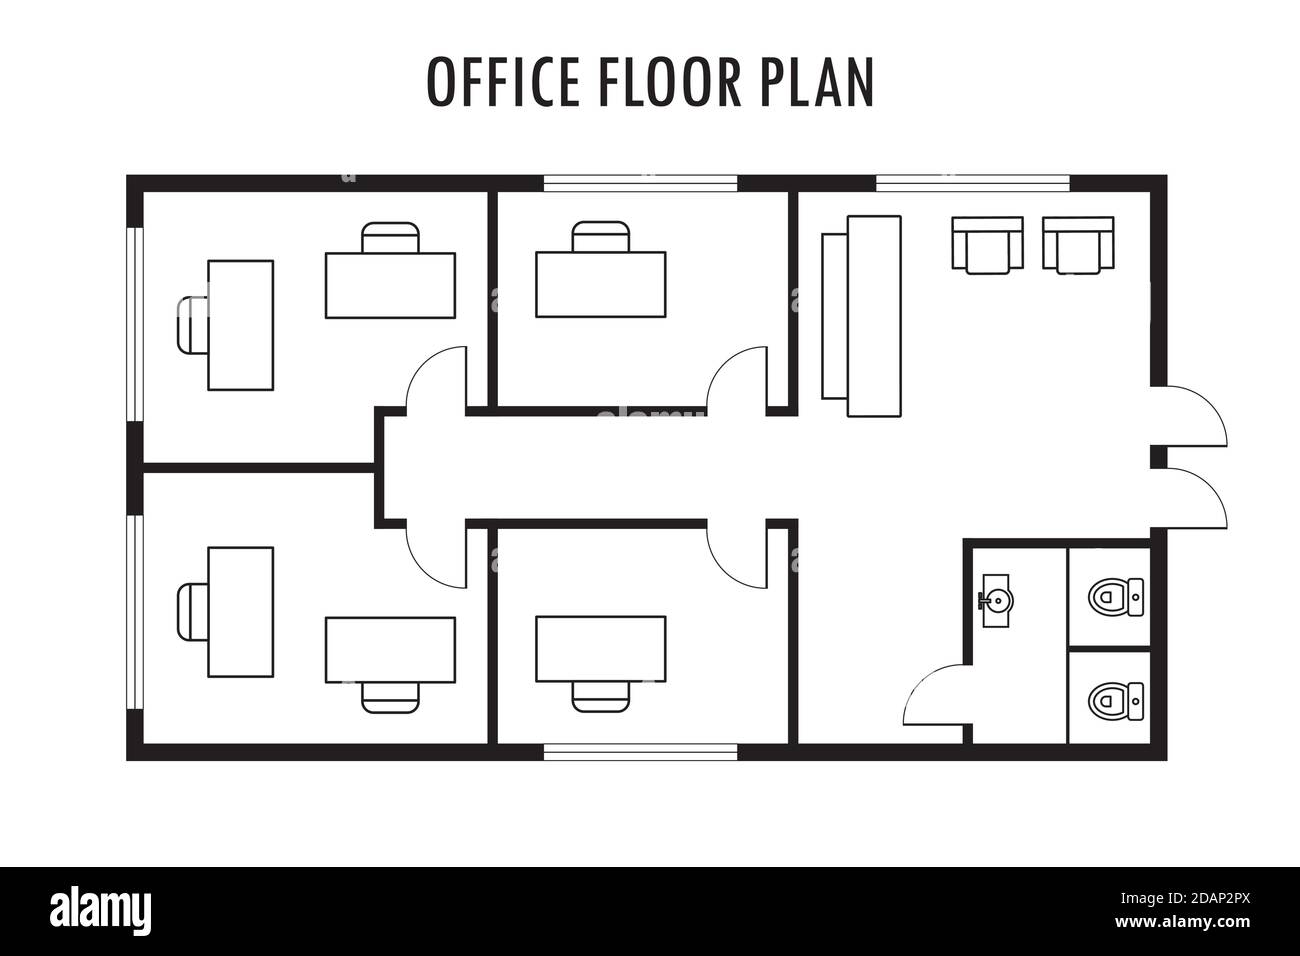 Plan d'architecture avec mobilier. Plan d'étage du bureau, isolé Image  Vectorielle Stock - Alamy